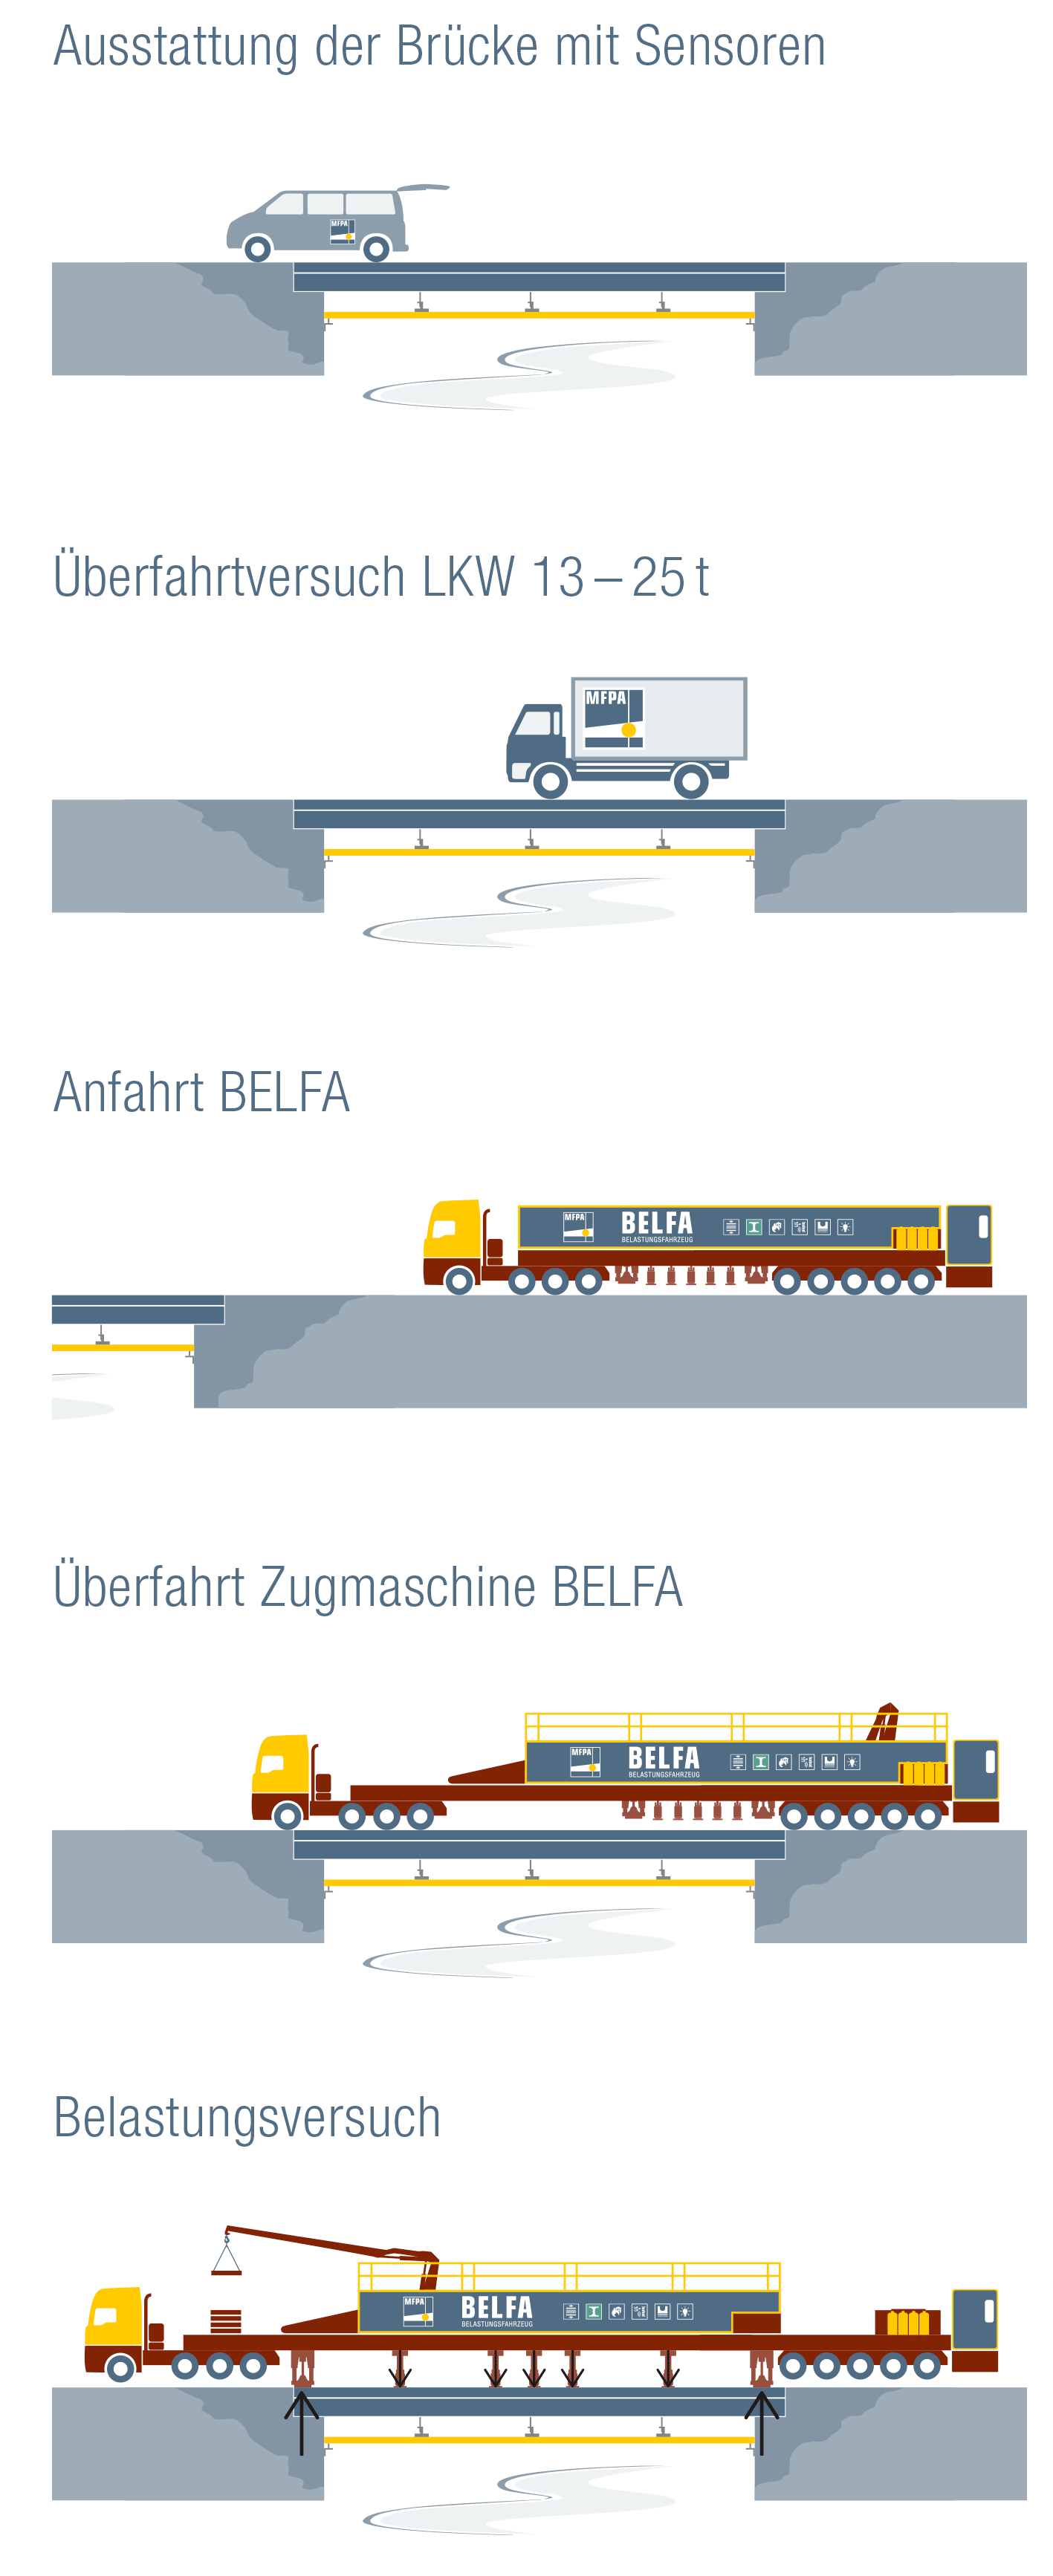 Illustrierte Darstellung zum Funktionsprinzip eines Brückenbelastungsversuchs